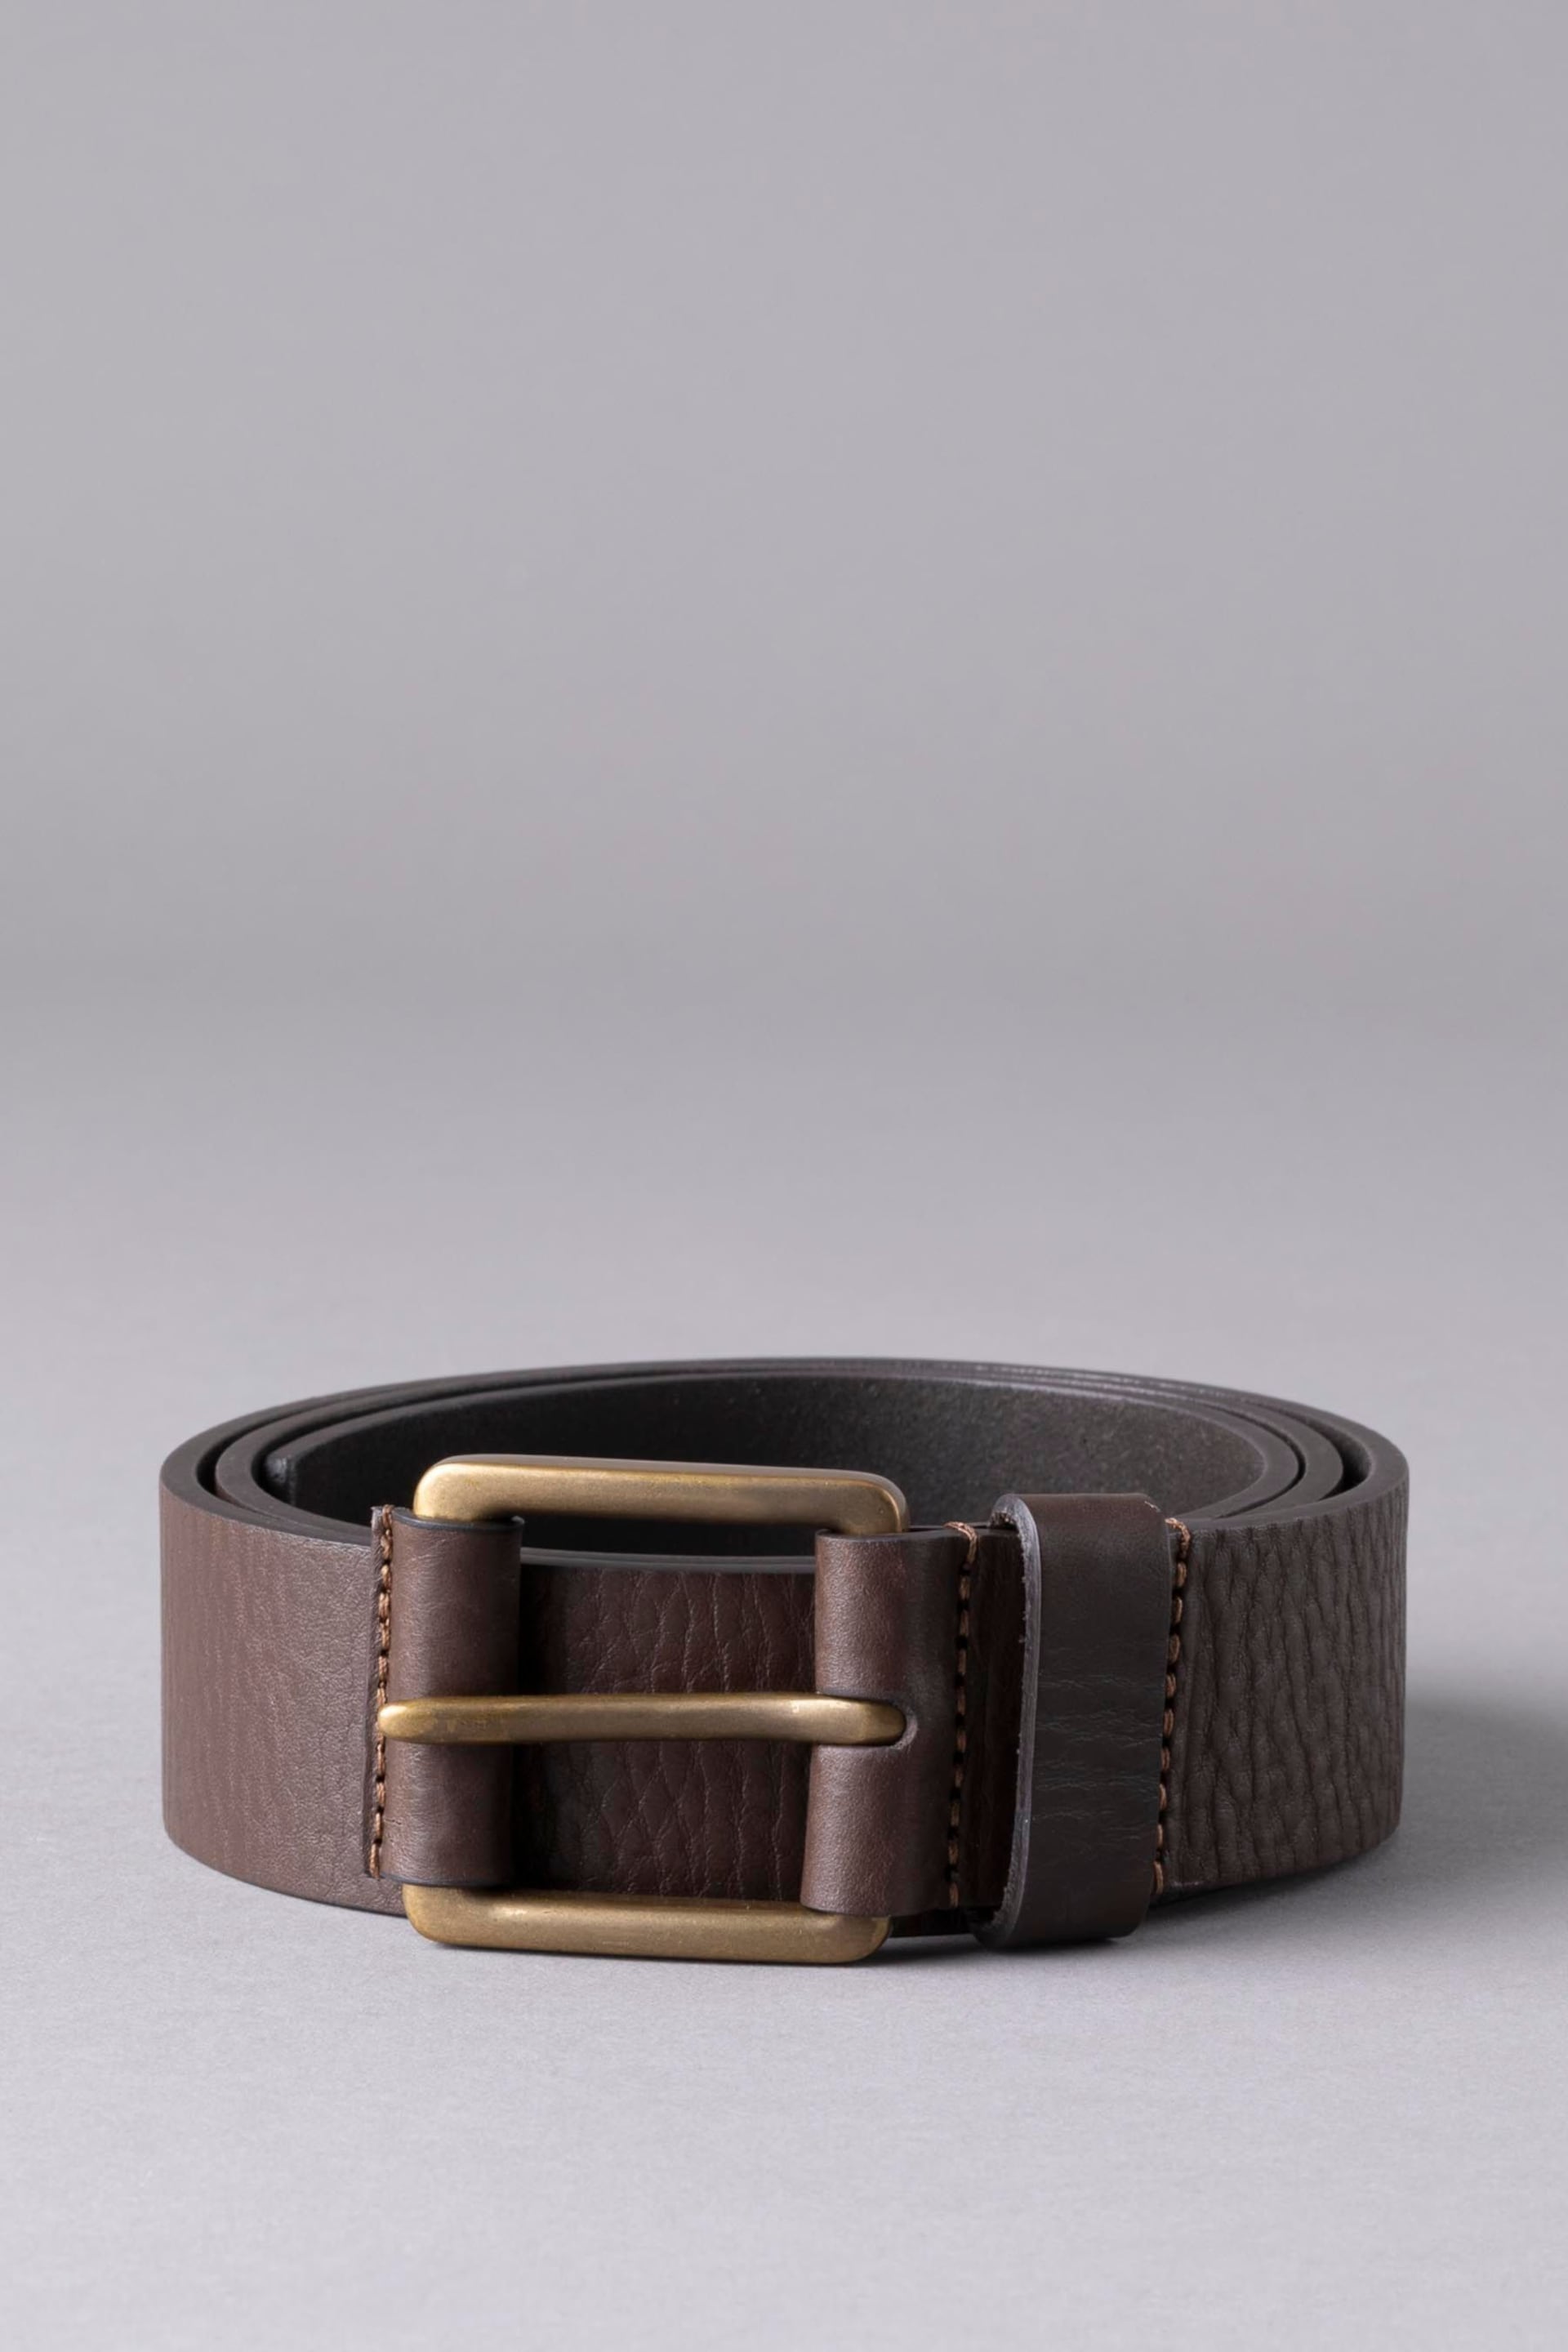 Lakeland Leather Braithwaite Leather Belt - Image 1 of 3